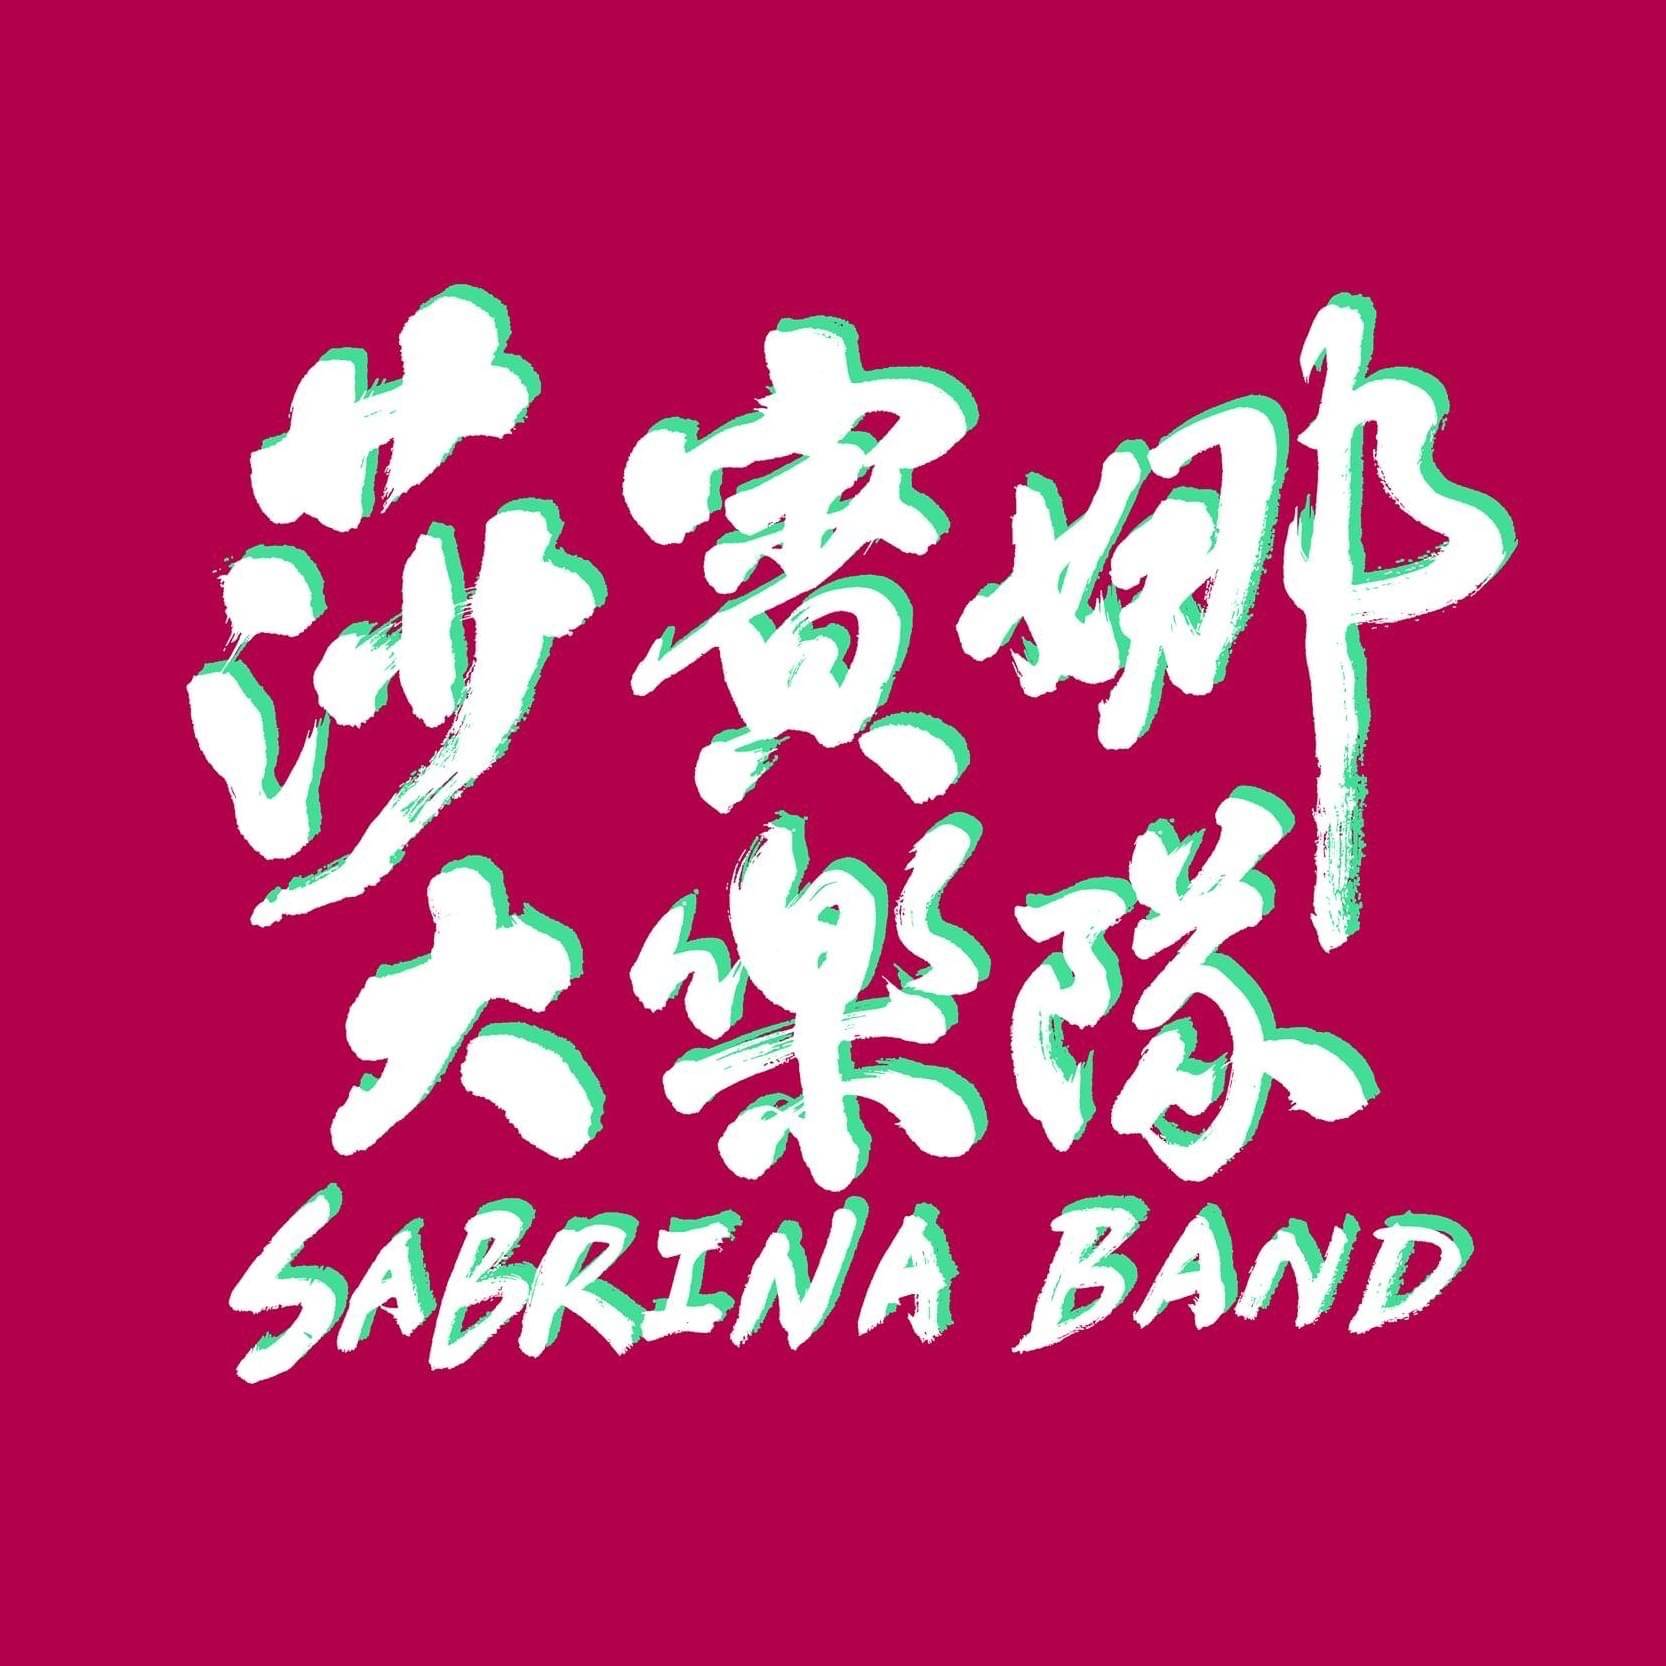 莎賓娜大樂隊Sabrina Band